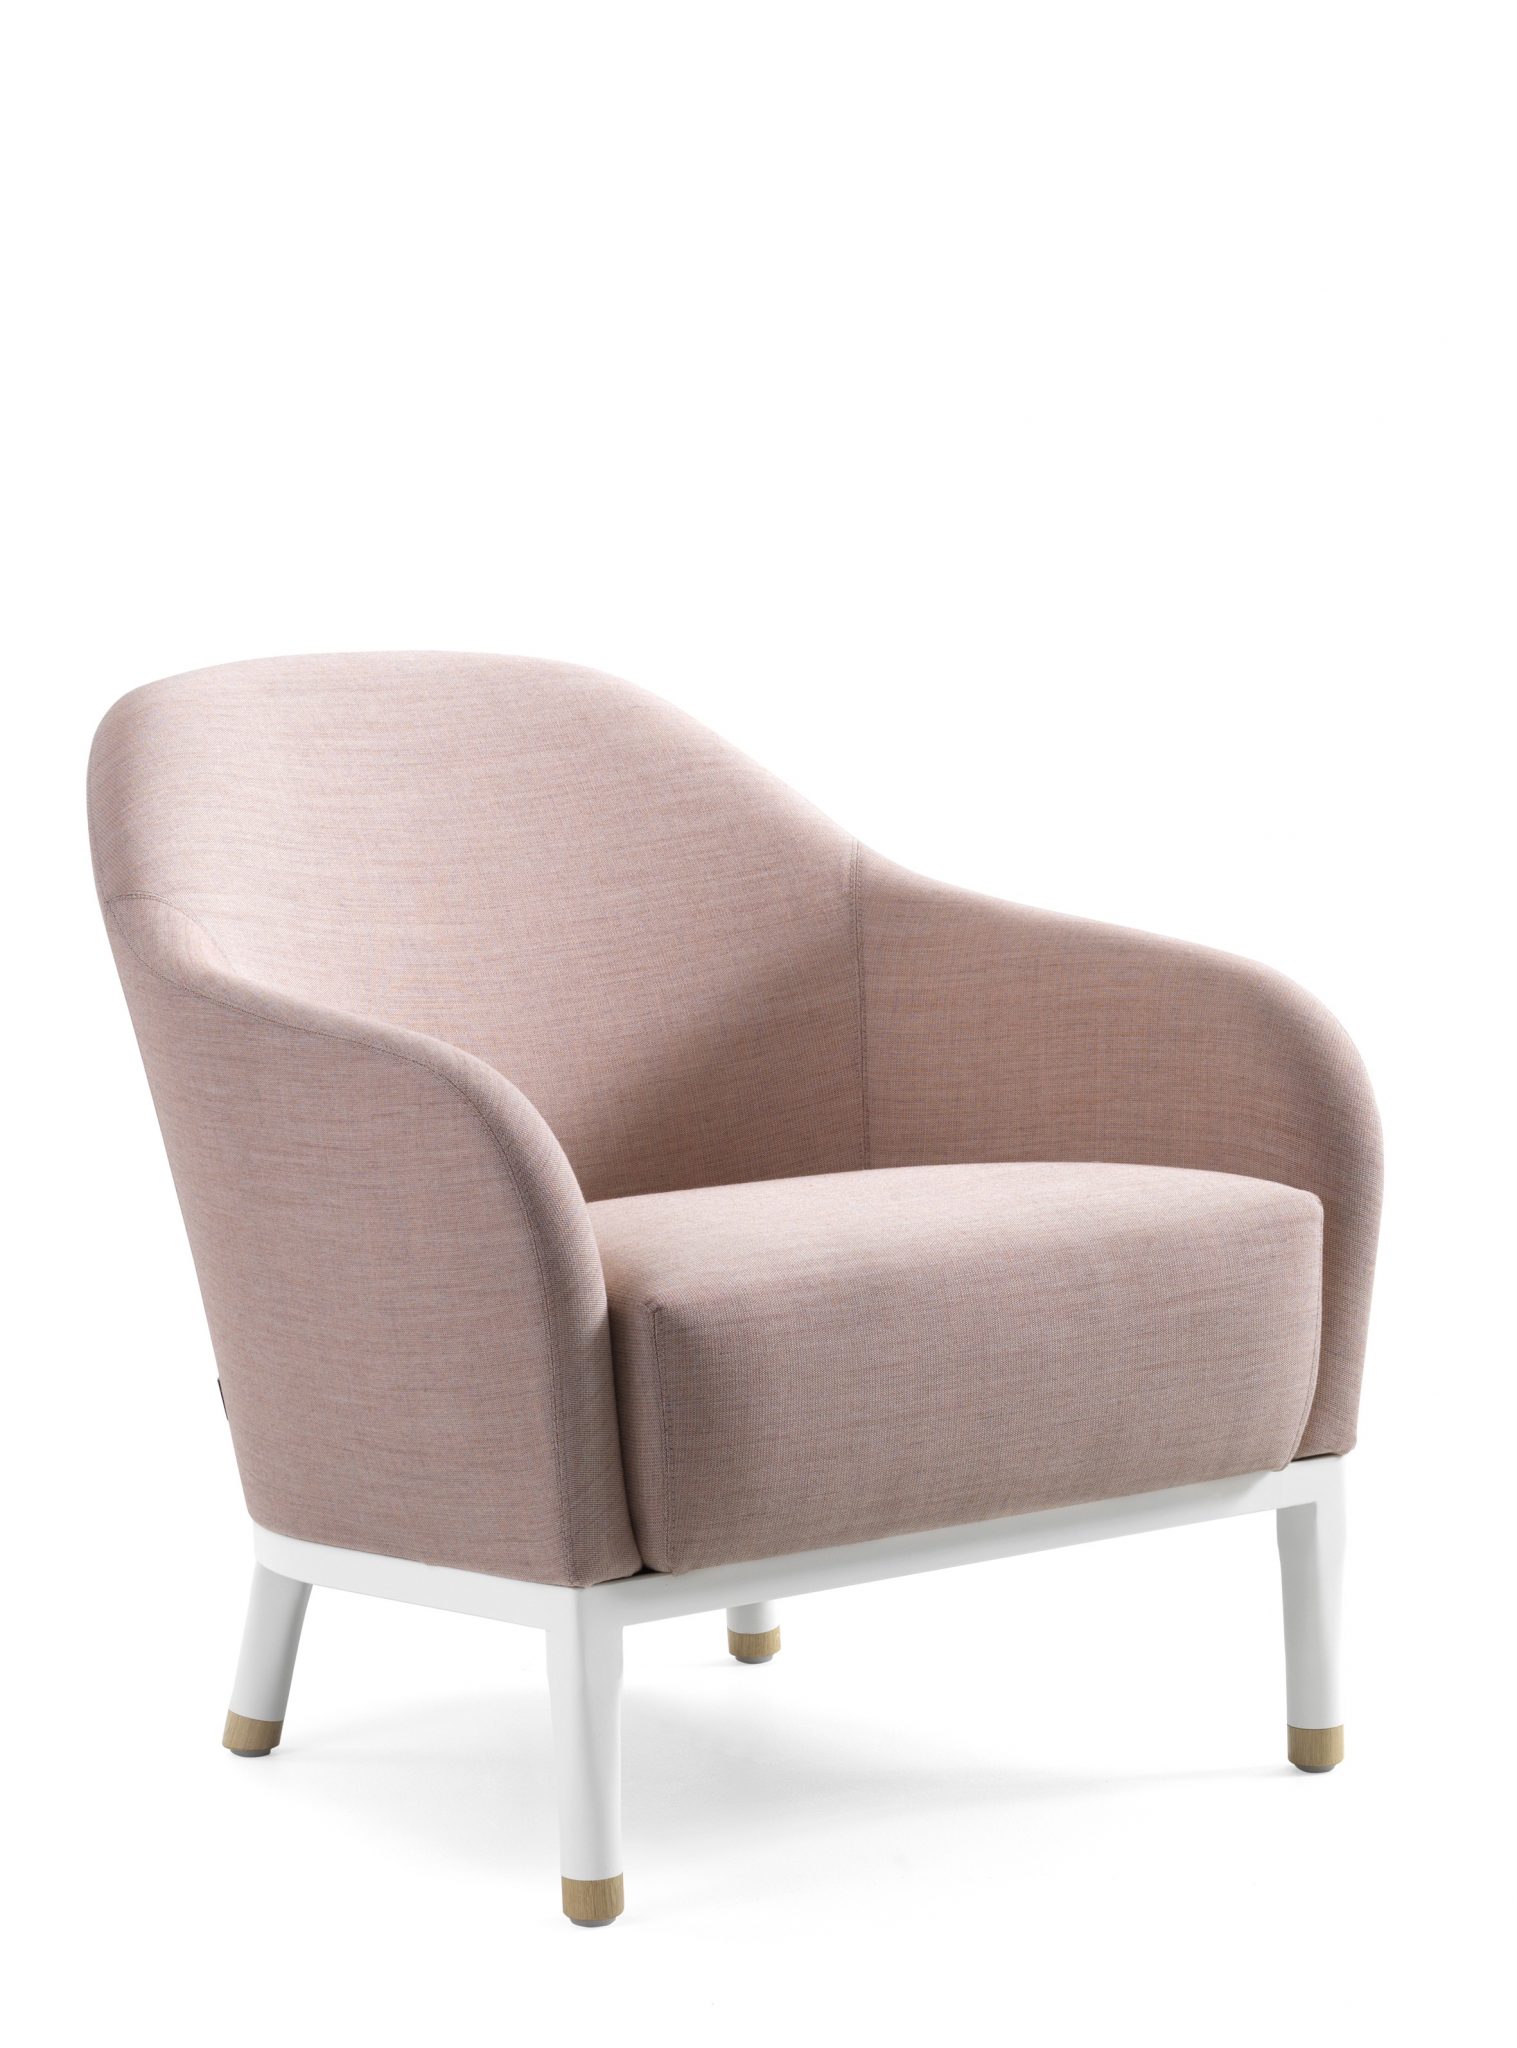 Edith Lounge Chair